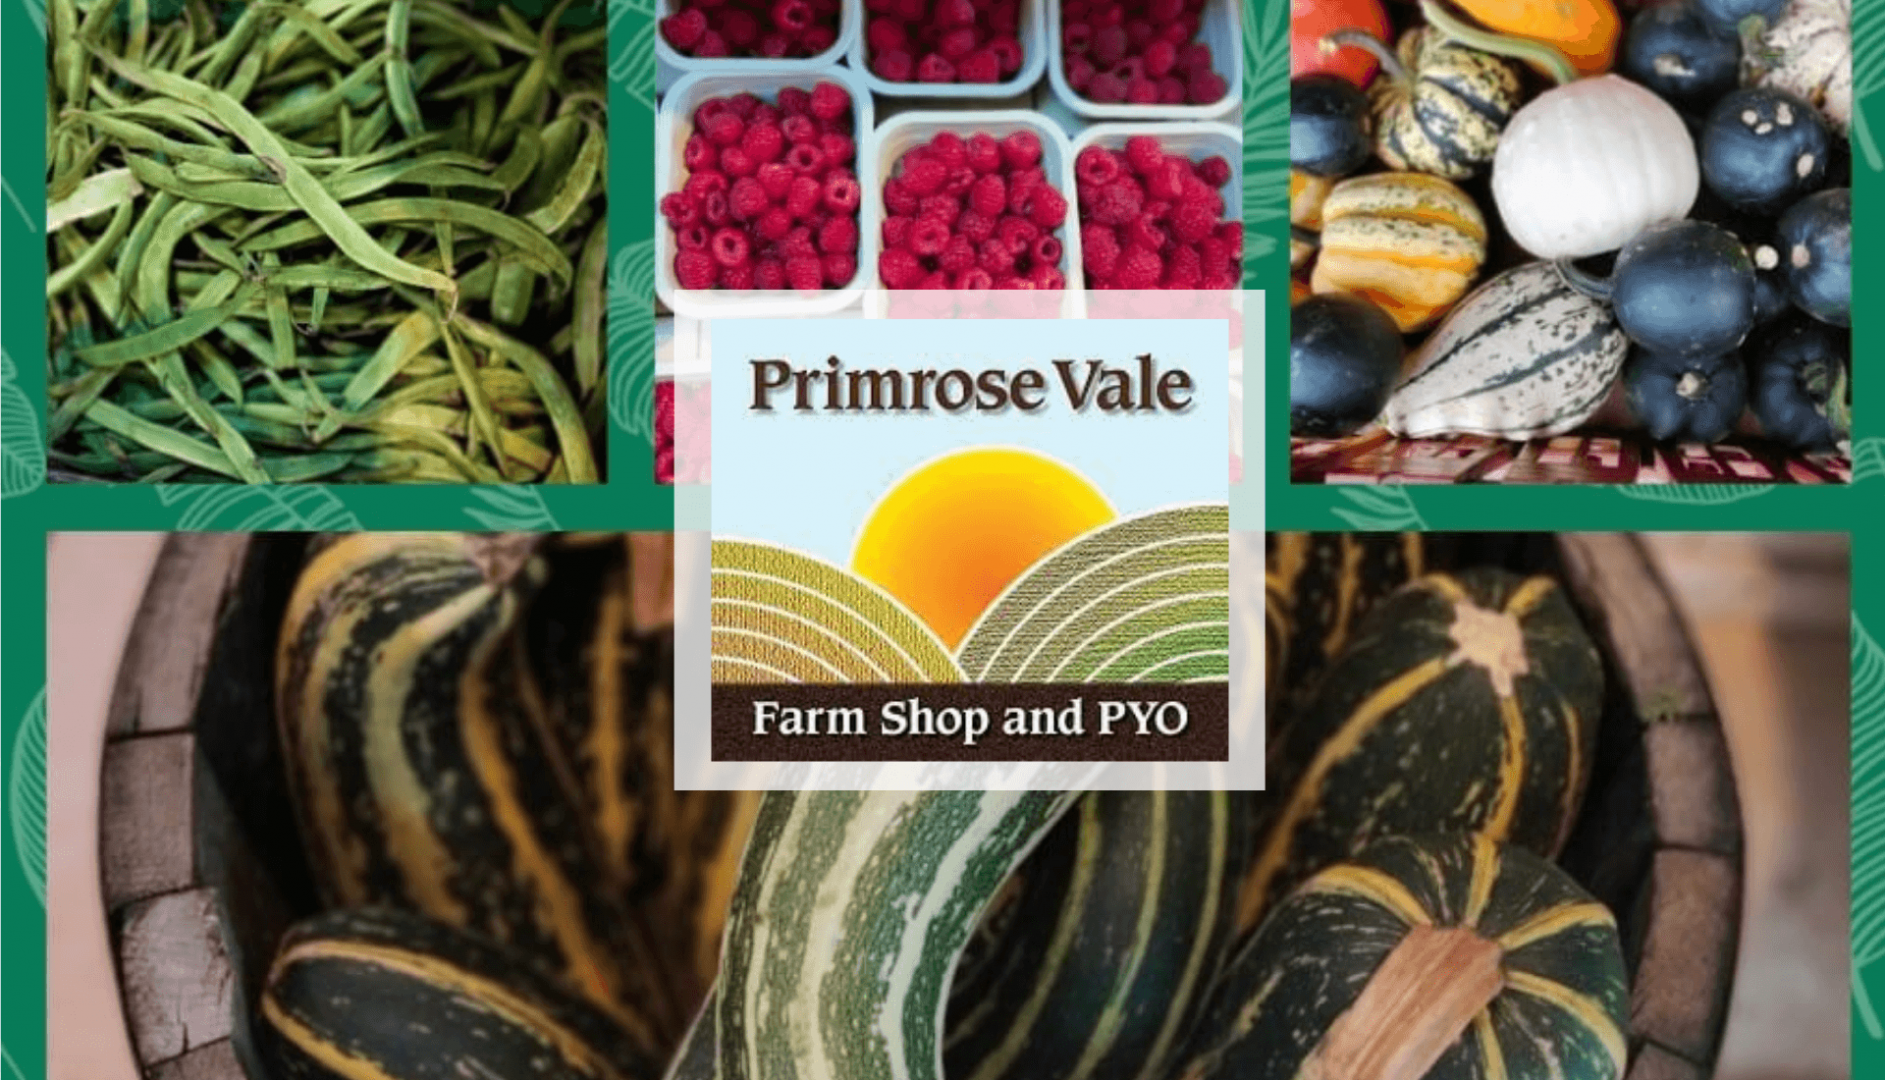 Primrose Vale Farm Shop in Cheltenham